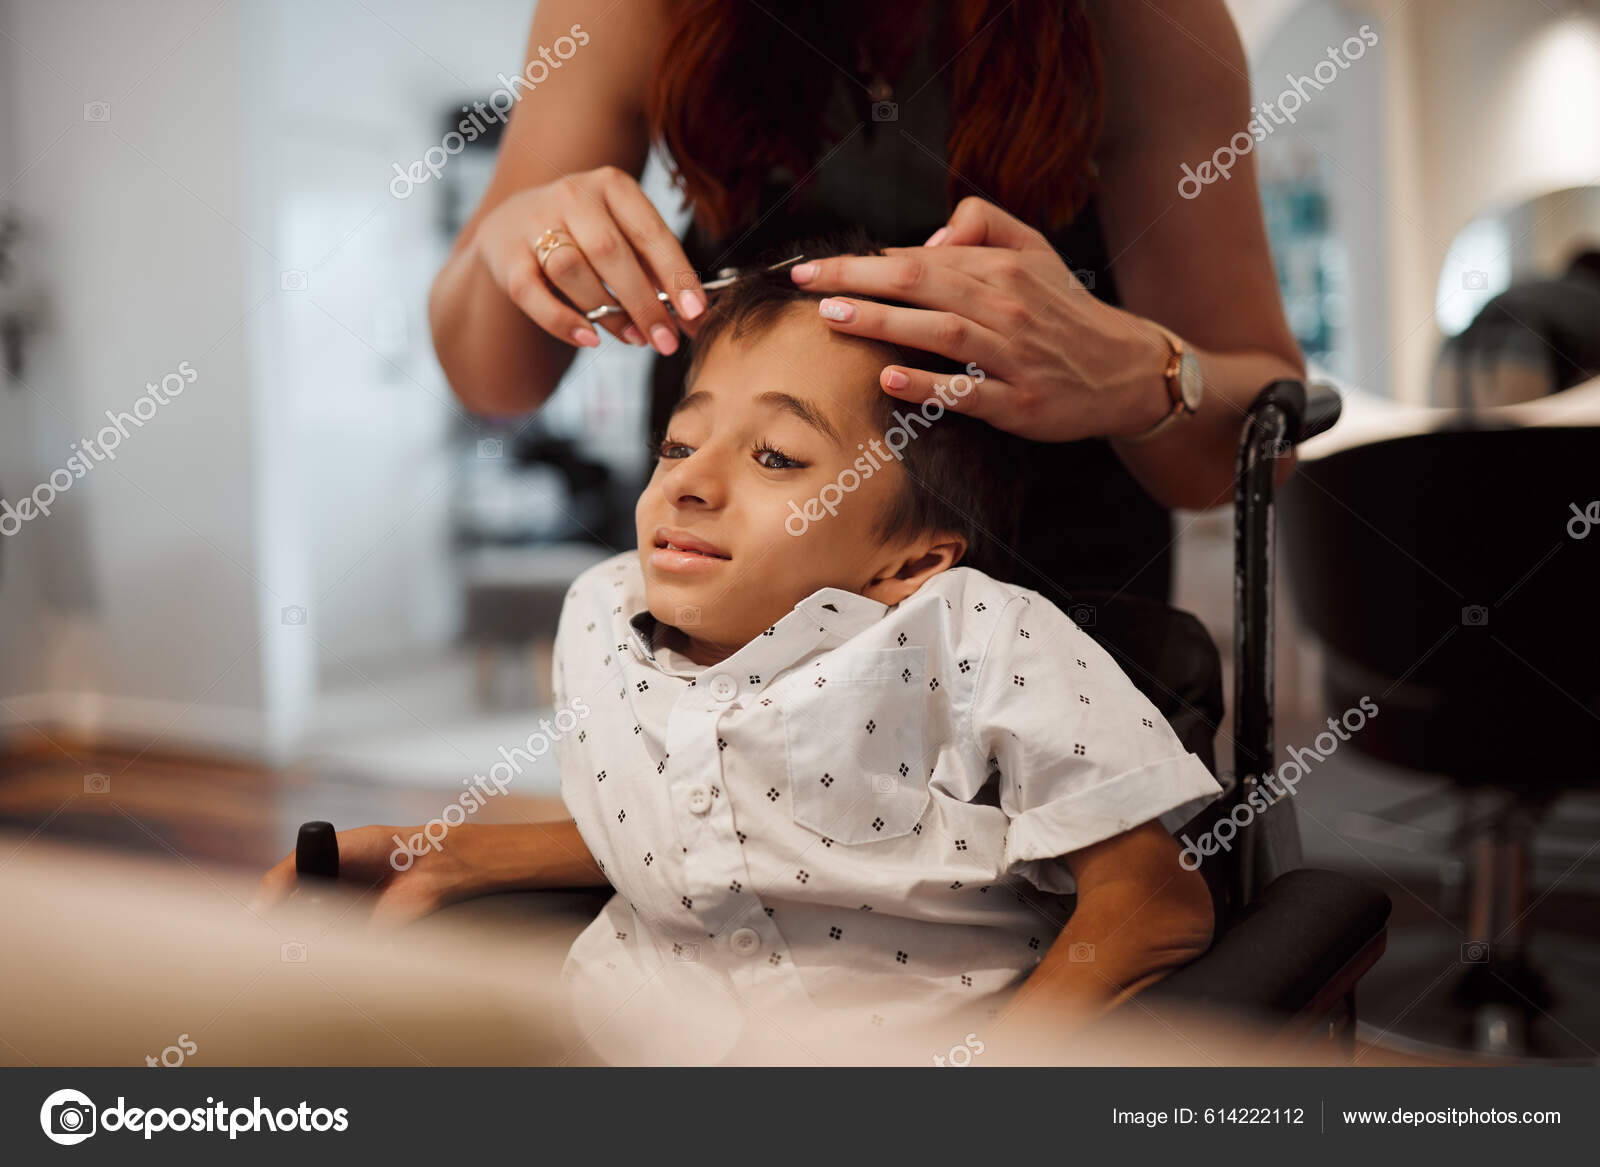 Cabelo infantil corte cadeira barbeiro cabeleireiro cabeleireiro